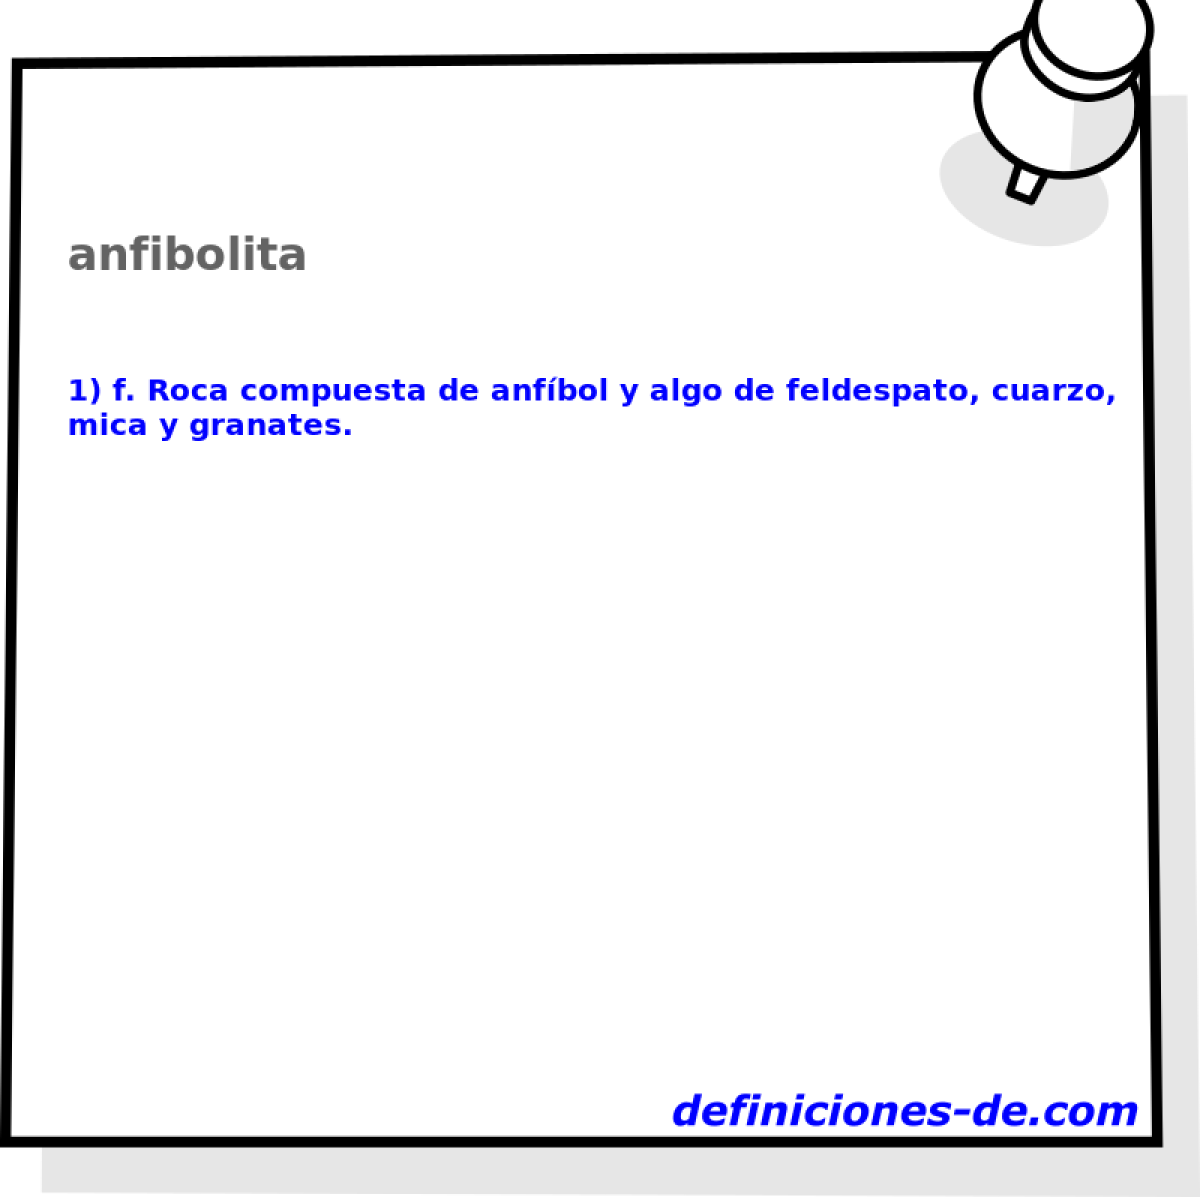 anfibolita 